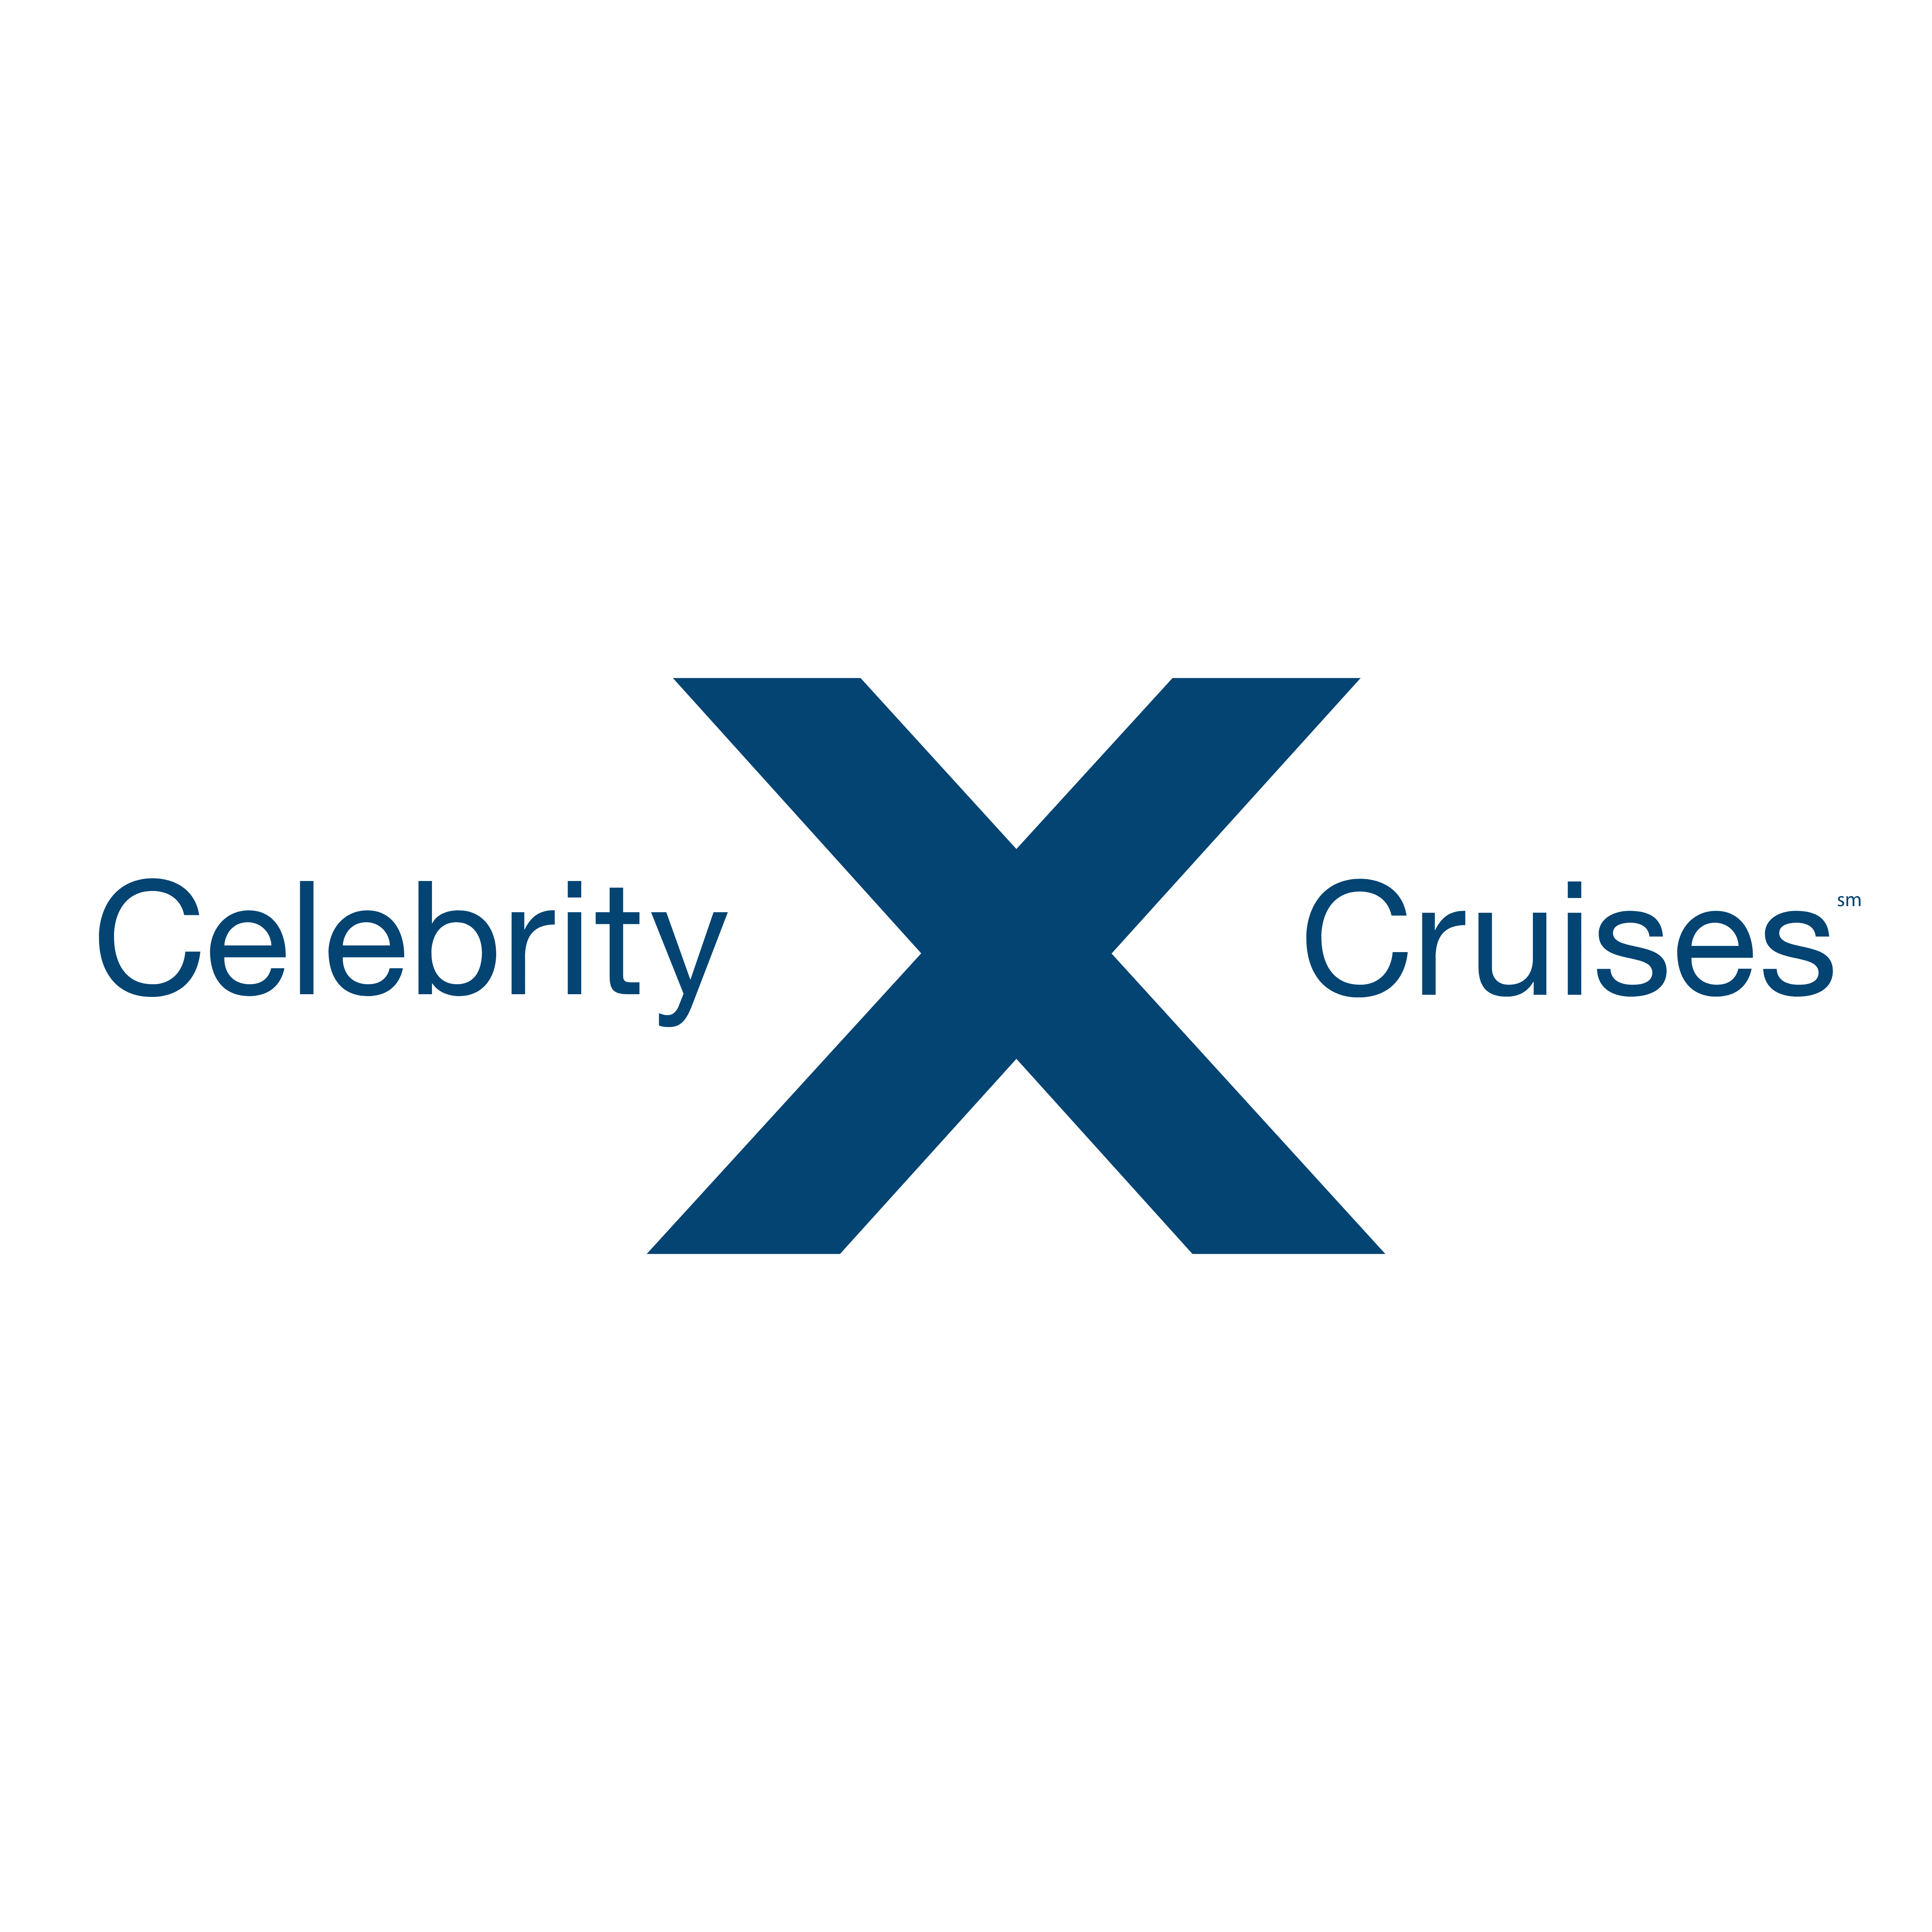 cruise companies logos